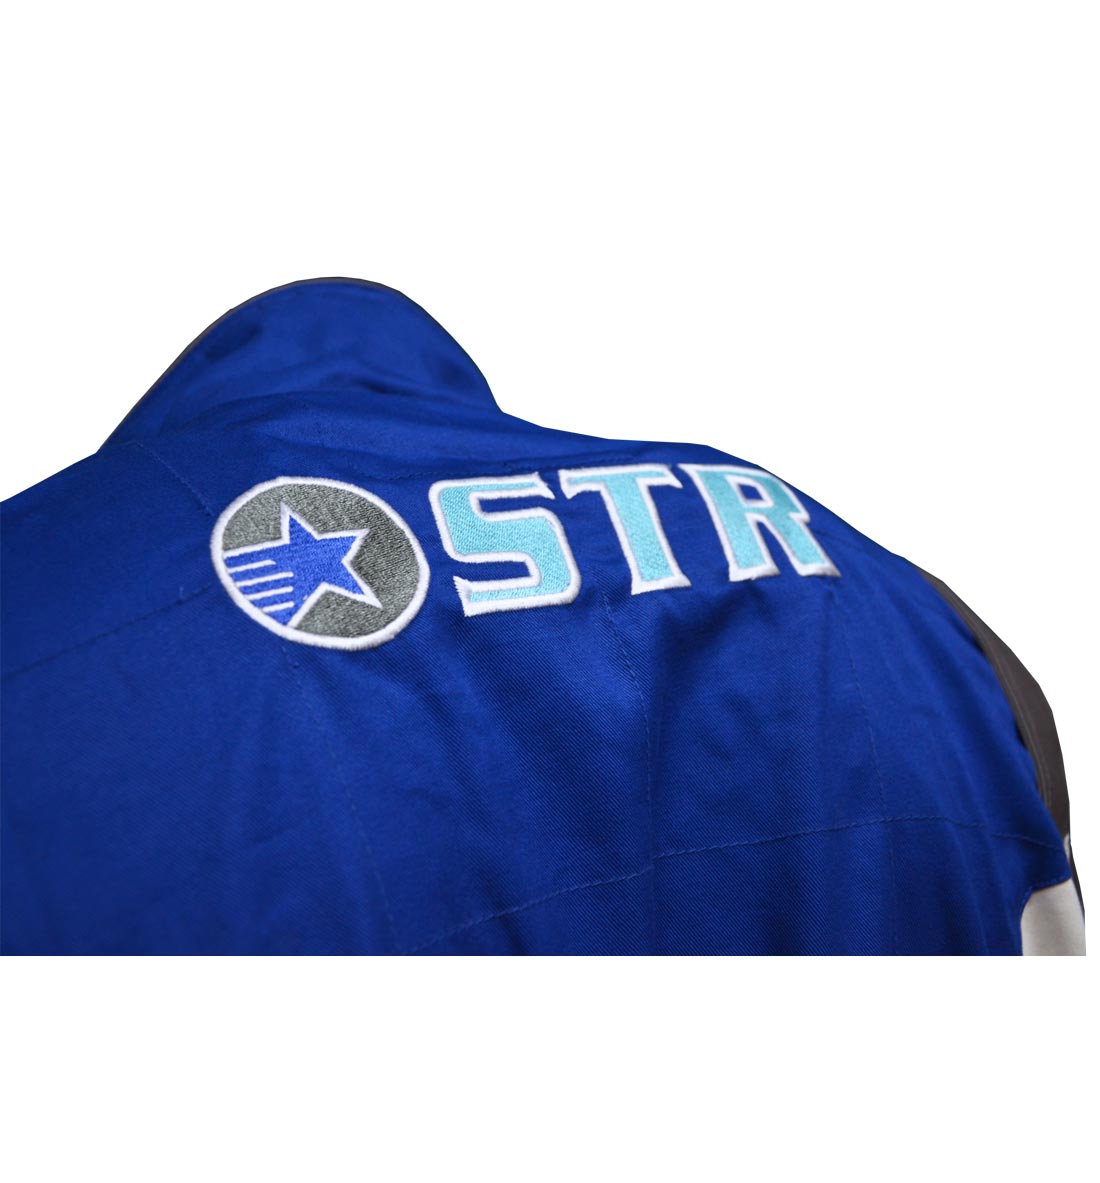 STR 'Podium' Race Suit - Blue/White/Grey